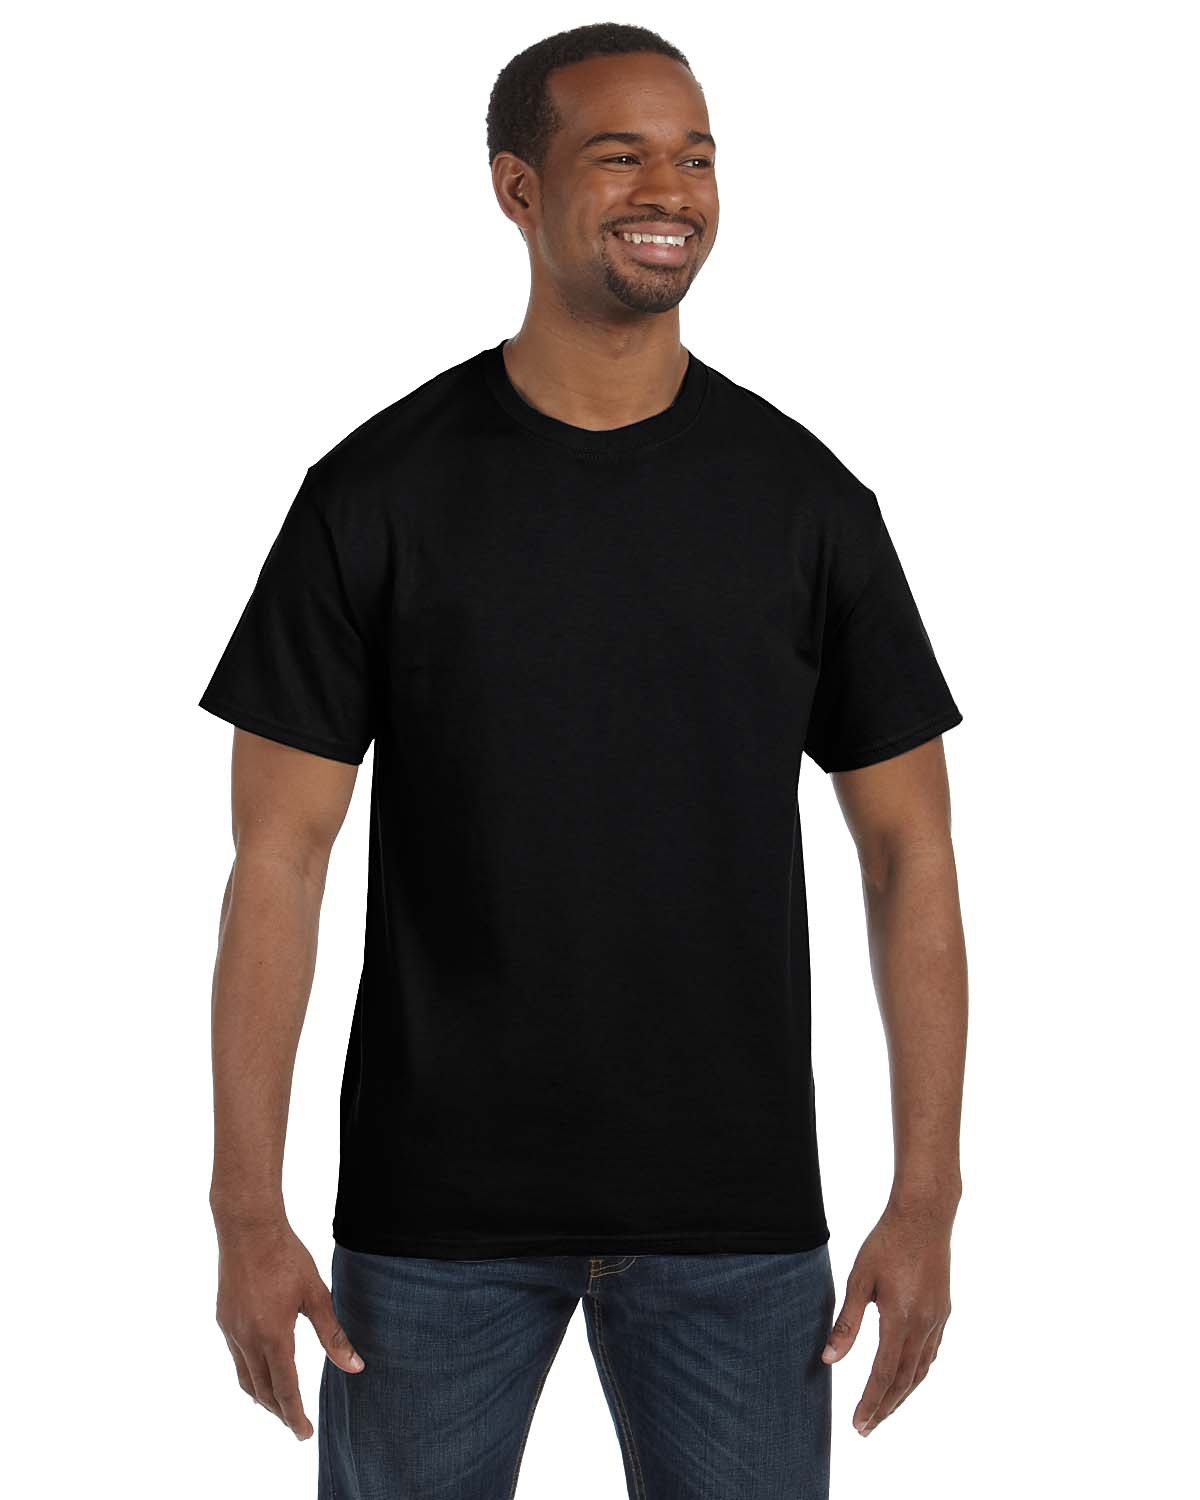 Hanes Mens 6 oz Authentic-T T-Shirt